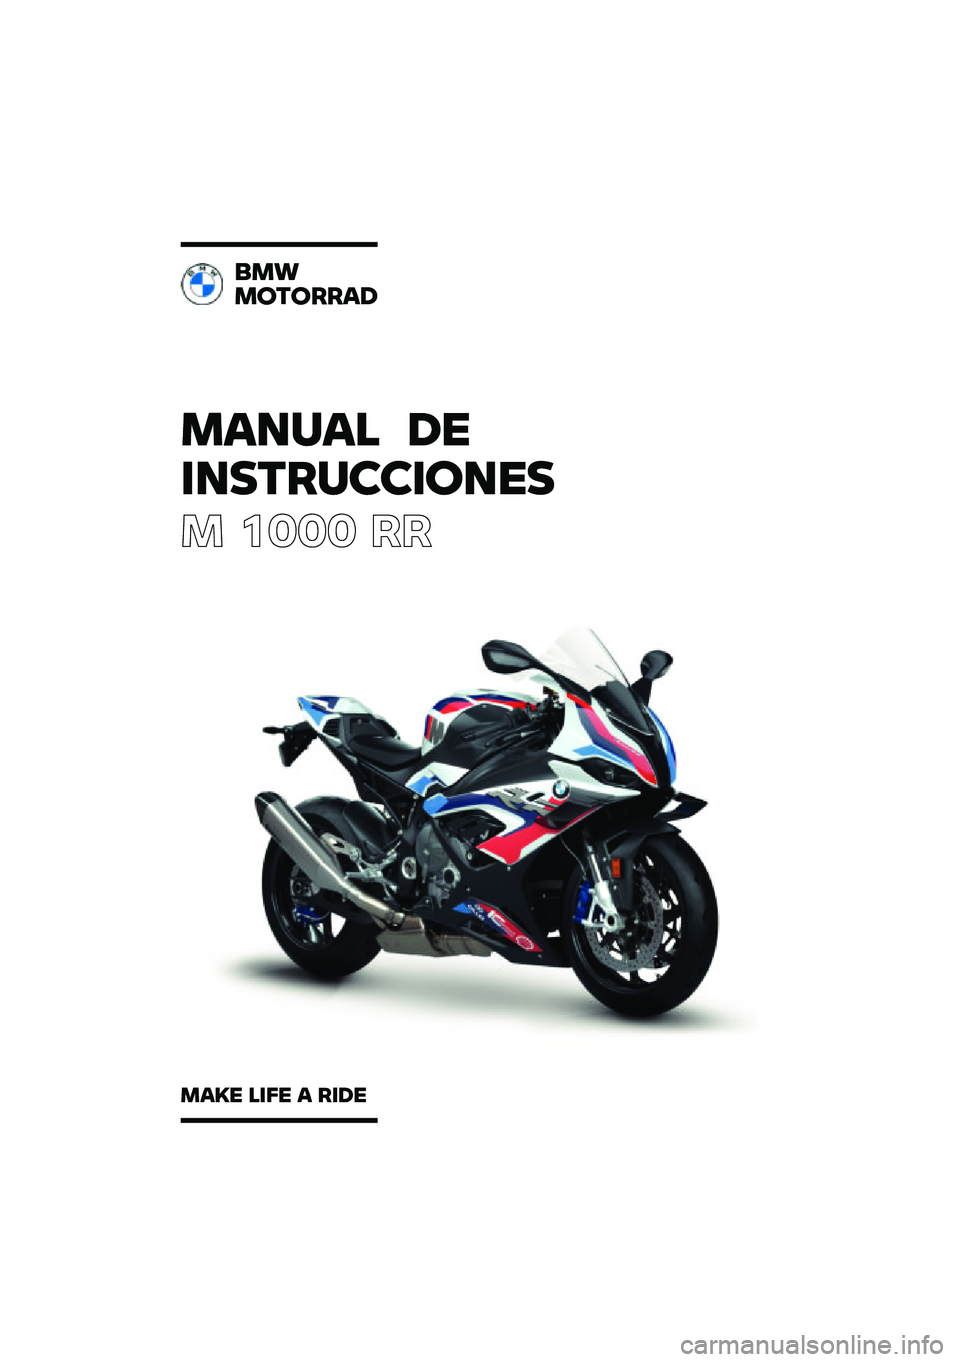 BMW MOTORRAD M 1000 RR 2021  Manual de instrucciones (in Spanish) ������ ��\b
�	��
��\f��
�
�	���\b�

� ���� ��
���
�����\f�\f��
����\b ��	��\b � �\f�	��\b 